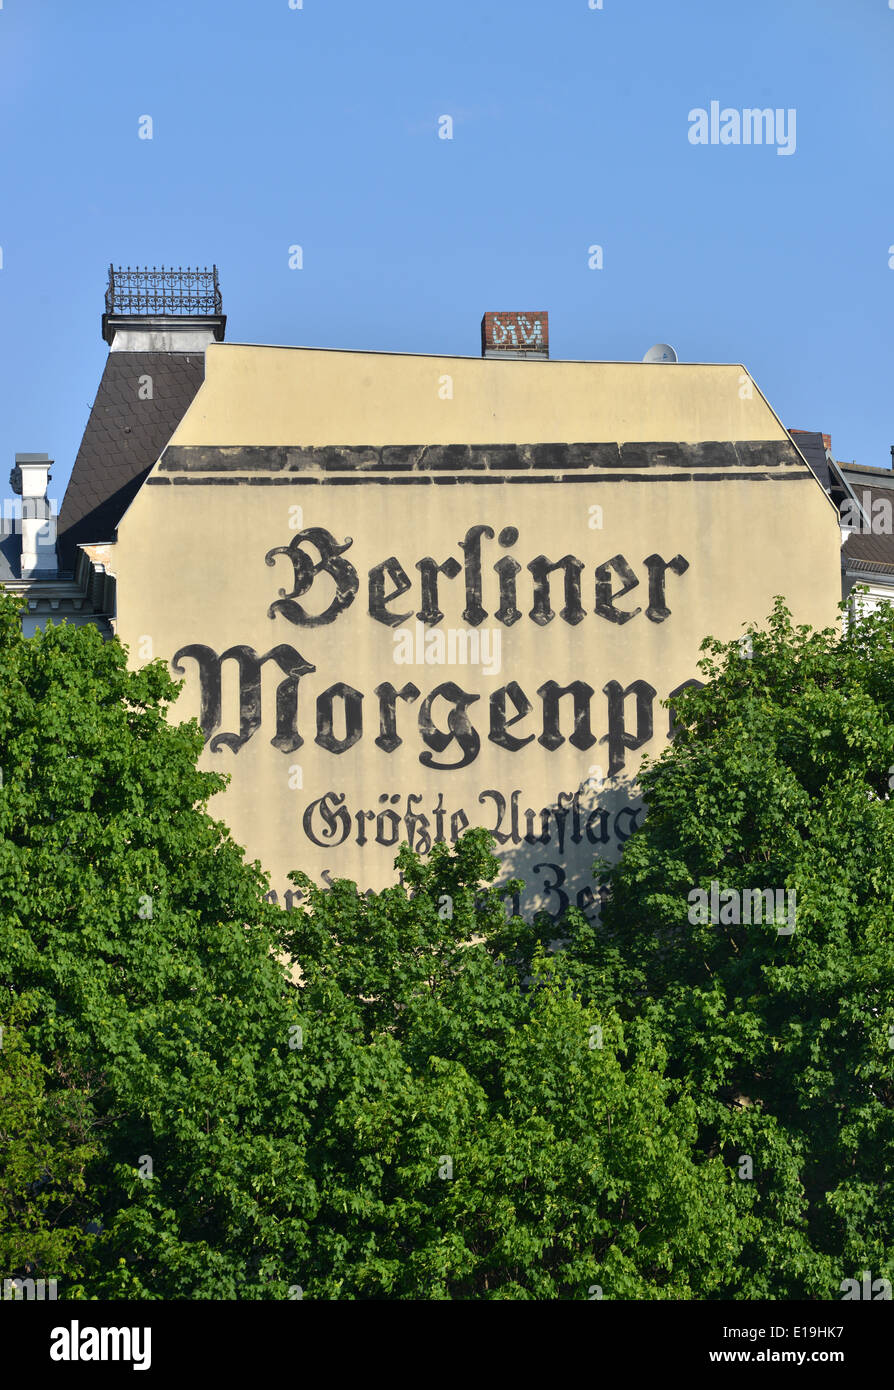 Werbung Berliner Morgenpost, Hausfassade Friedenau, 20er Jahre, Berlin Stock Photo